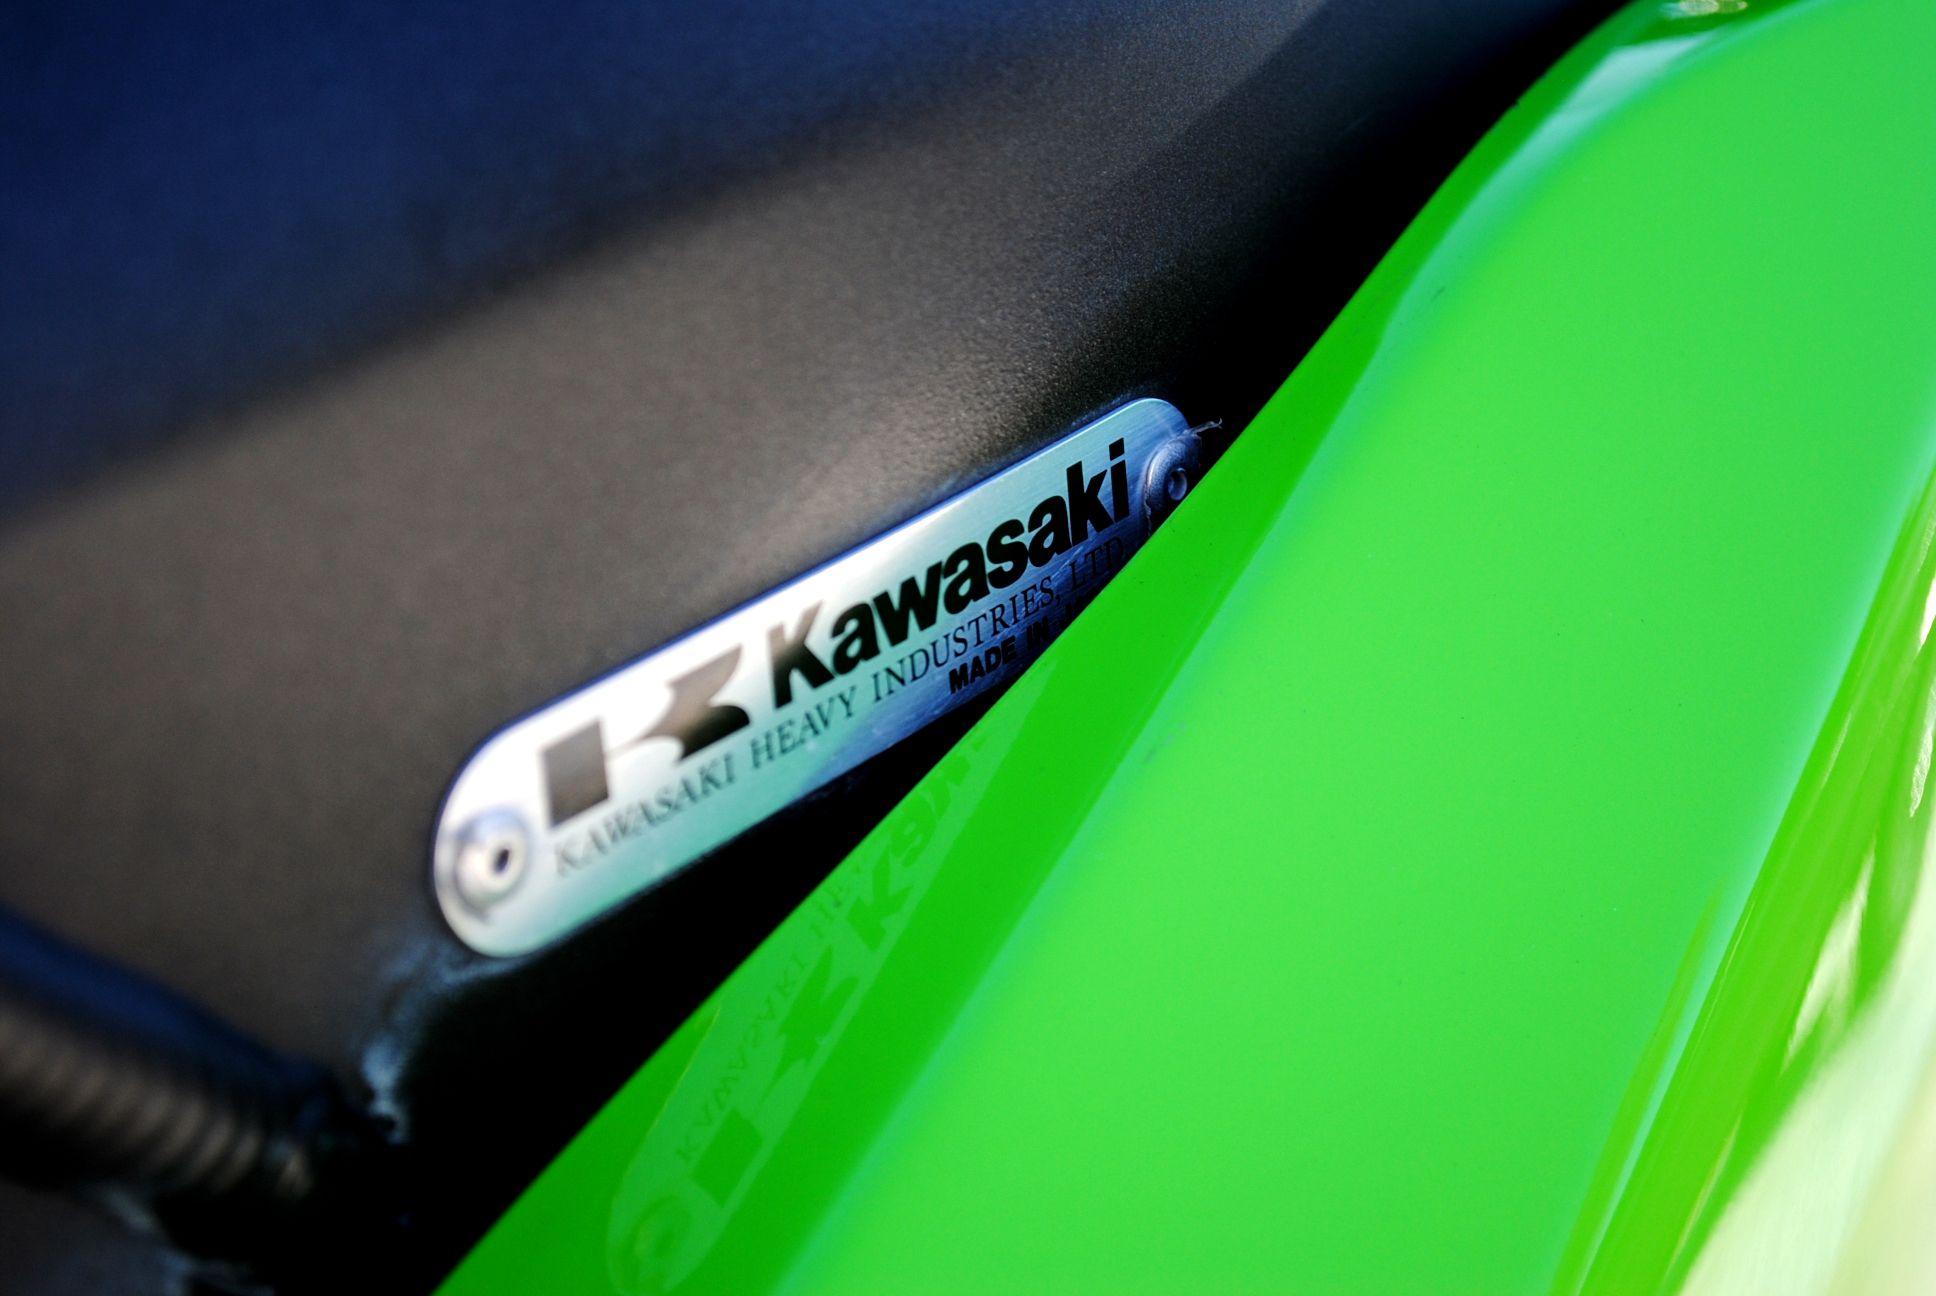 Kawasaki HD Wallpaper and Background Image